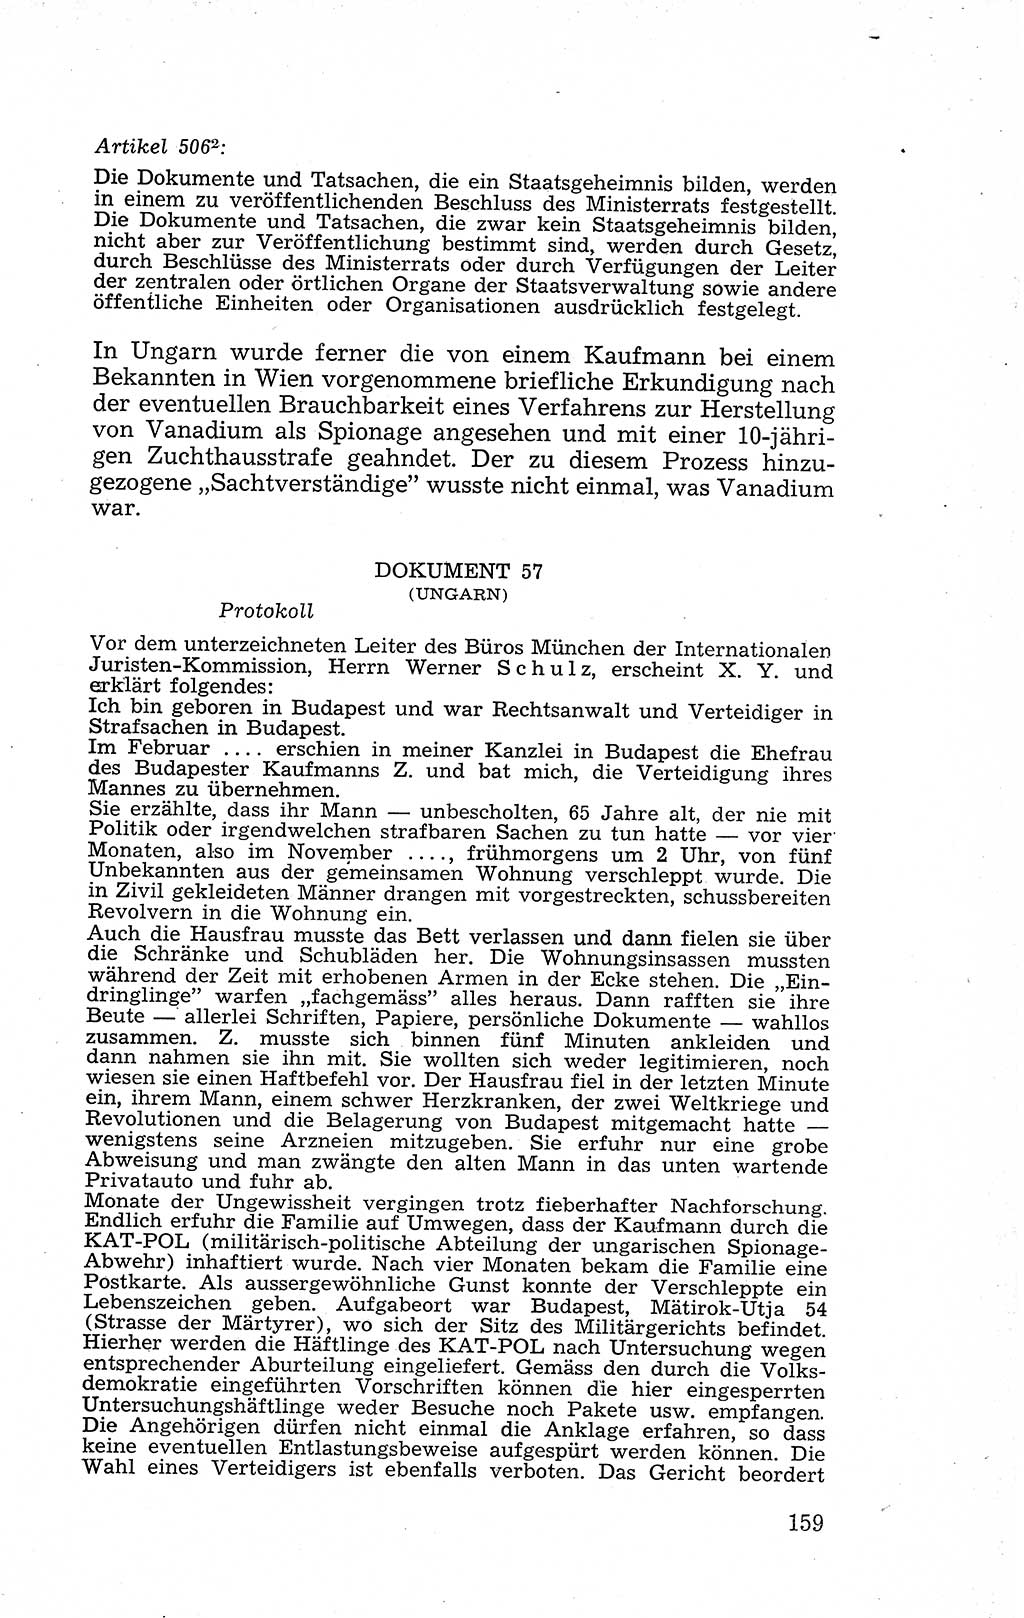 Recht in Fesseln, Dokumente, Internationale Juristen-Kommission [Bundesrepublik Deutschland (BRD)] 1955, Seite 159 (R. Dok. IJK BRD 1955, S. 159)